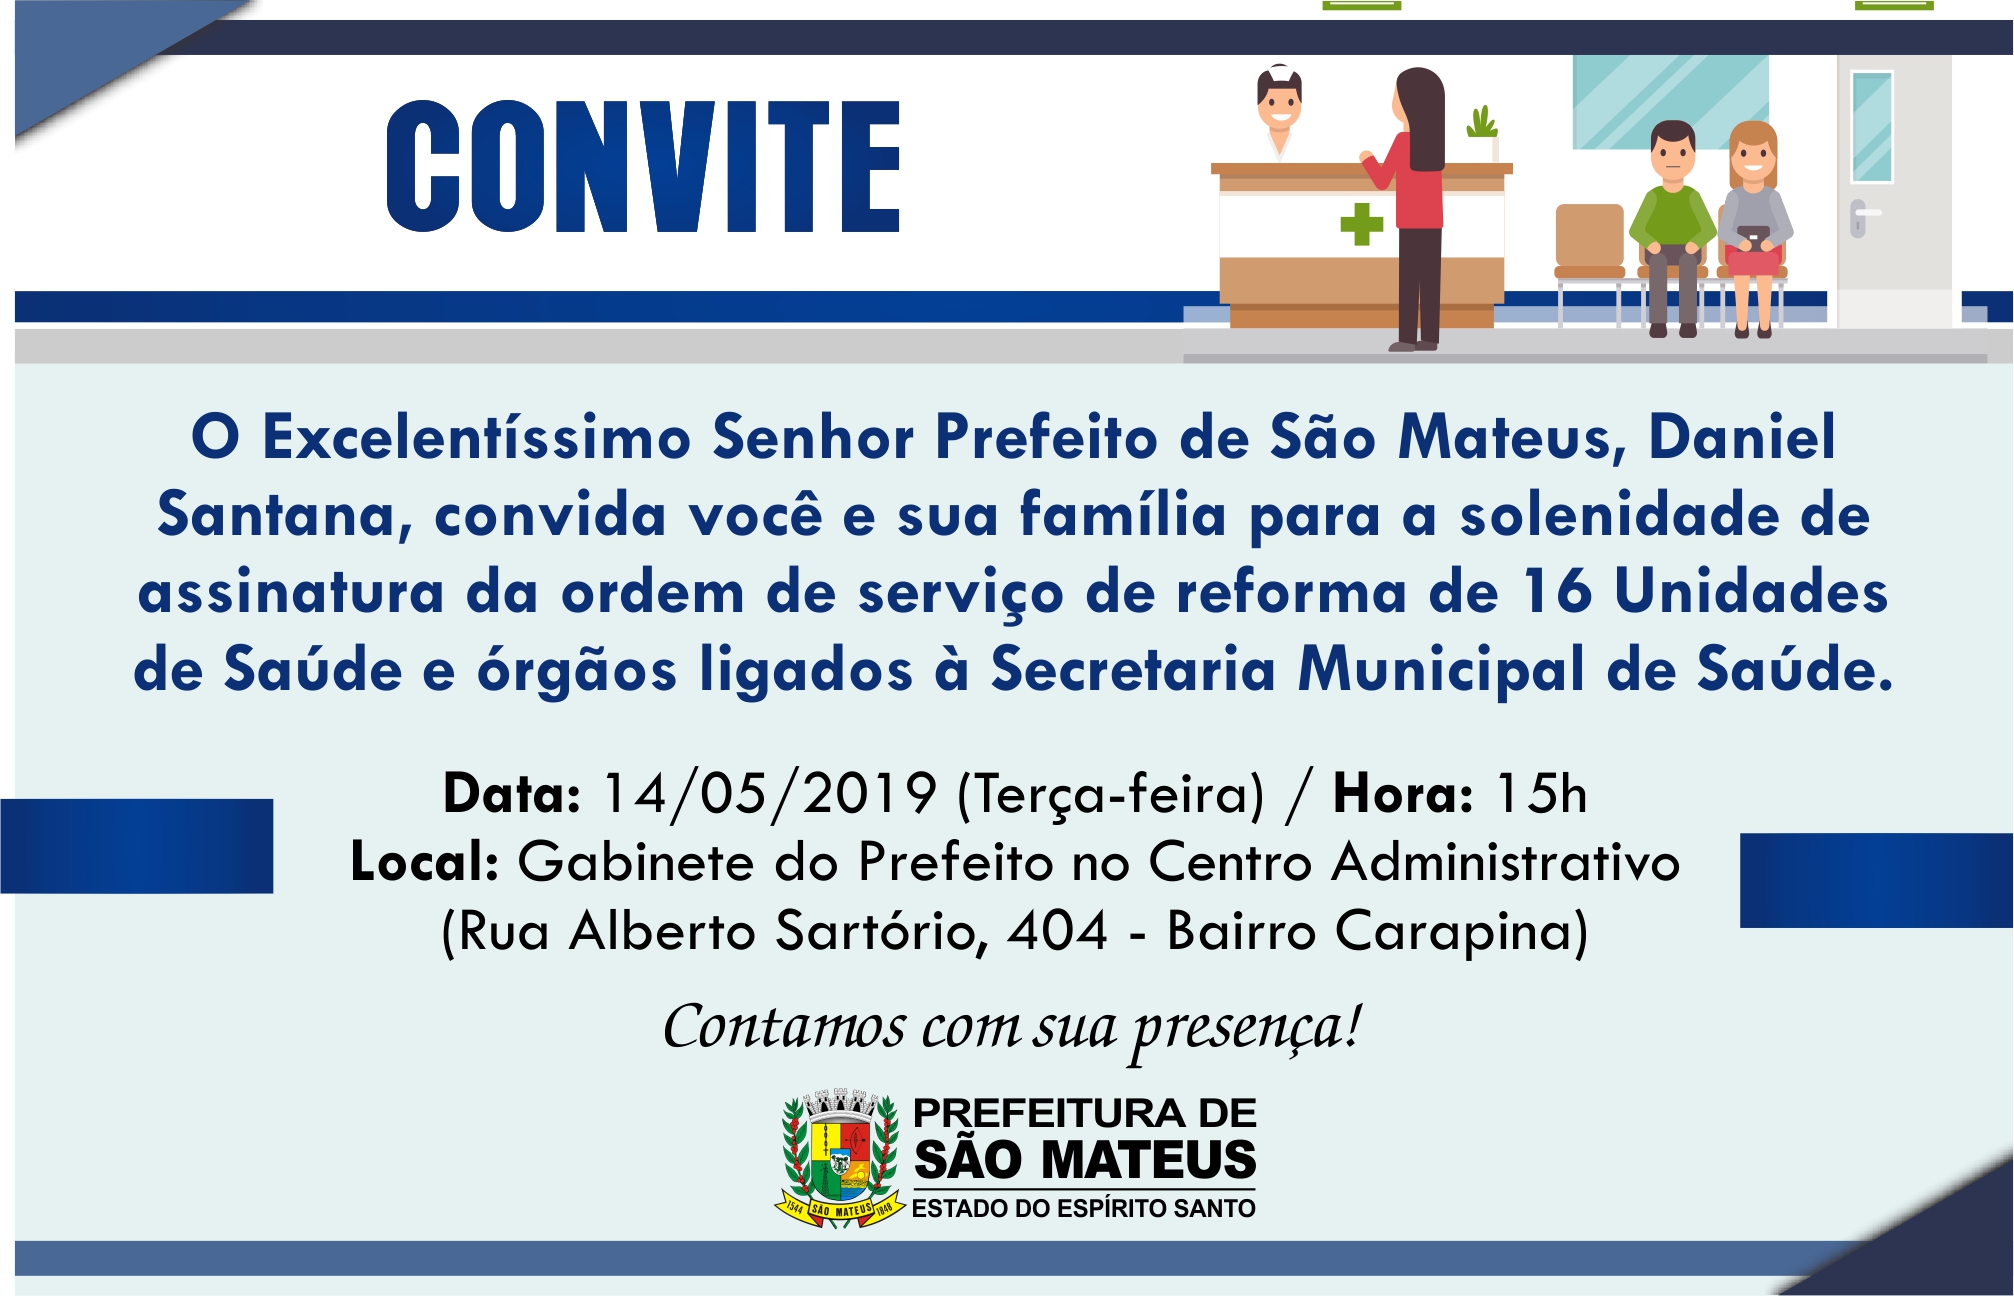 CONVITE - ASSINATURA DE ORDEM DE SERVIÇO PARA REFORMA DE UNIDADES DE SAÚDE